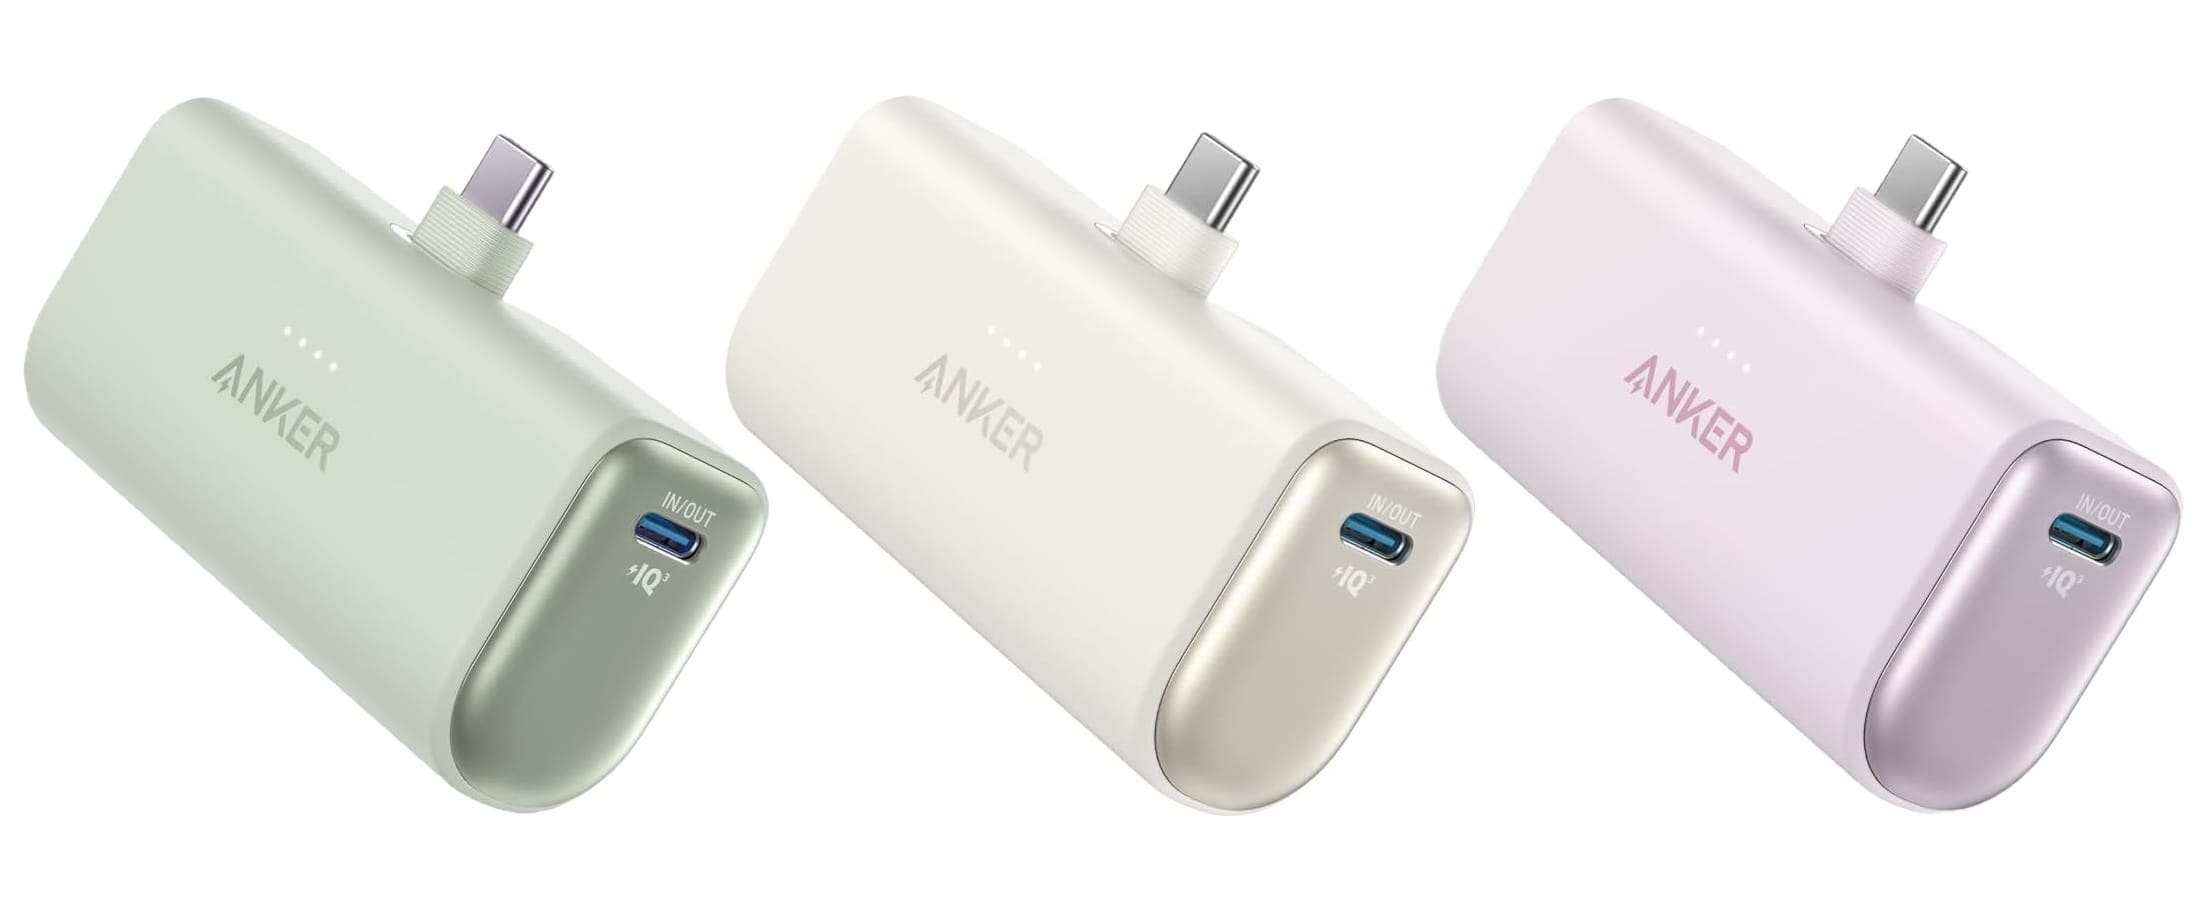 Anker、USB-Cコネクタ搭載モバイルバッテリーの新色を発売